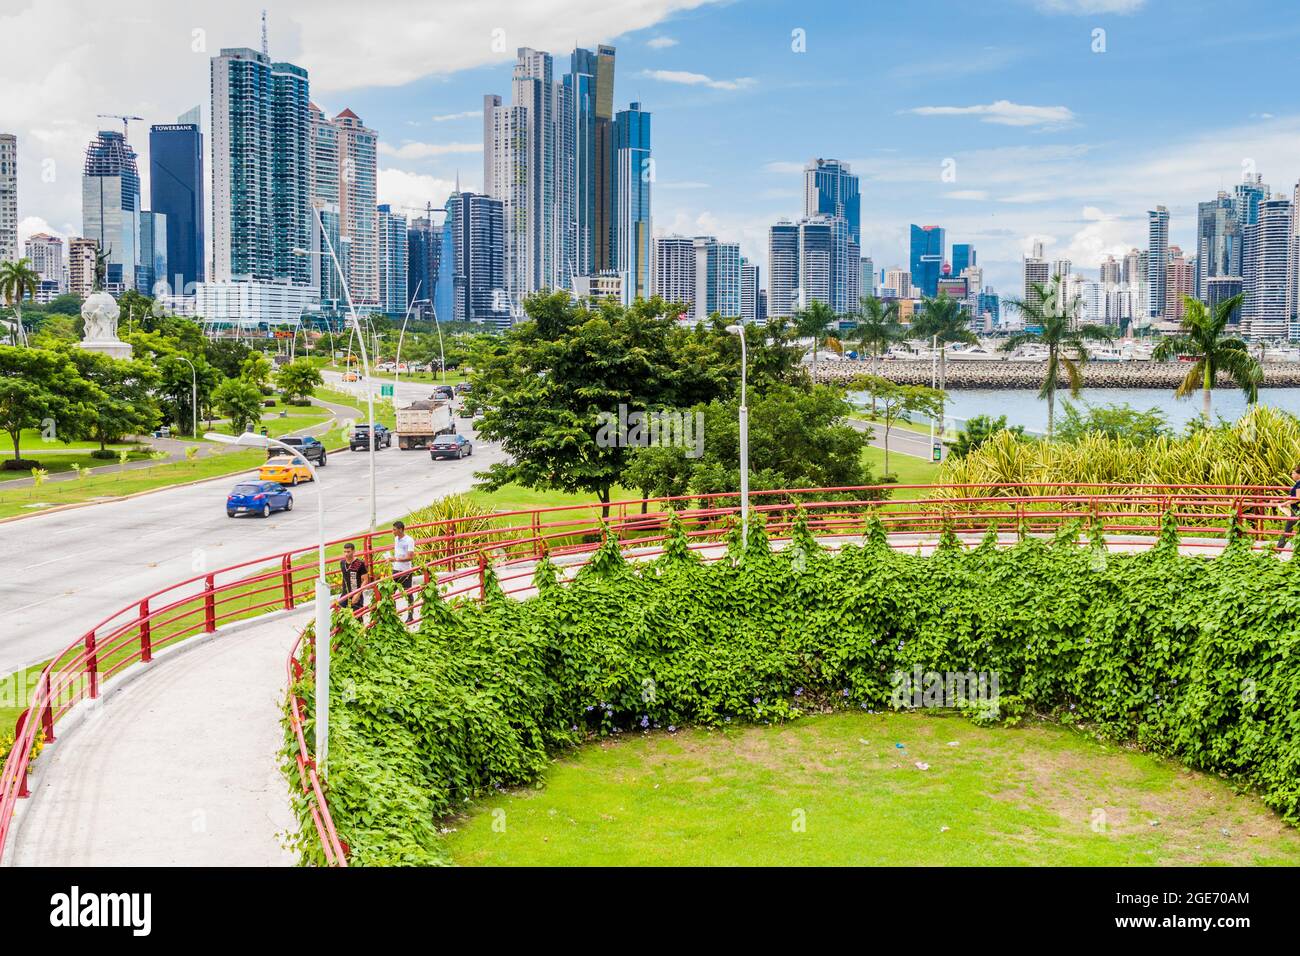 PANAMA CITY, PANAMA - 30 MAGGIO 2016: Vista dei grattacieli moderni e un viale Balboa traffico a Panama City. Foto Stock